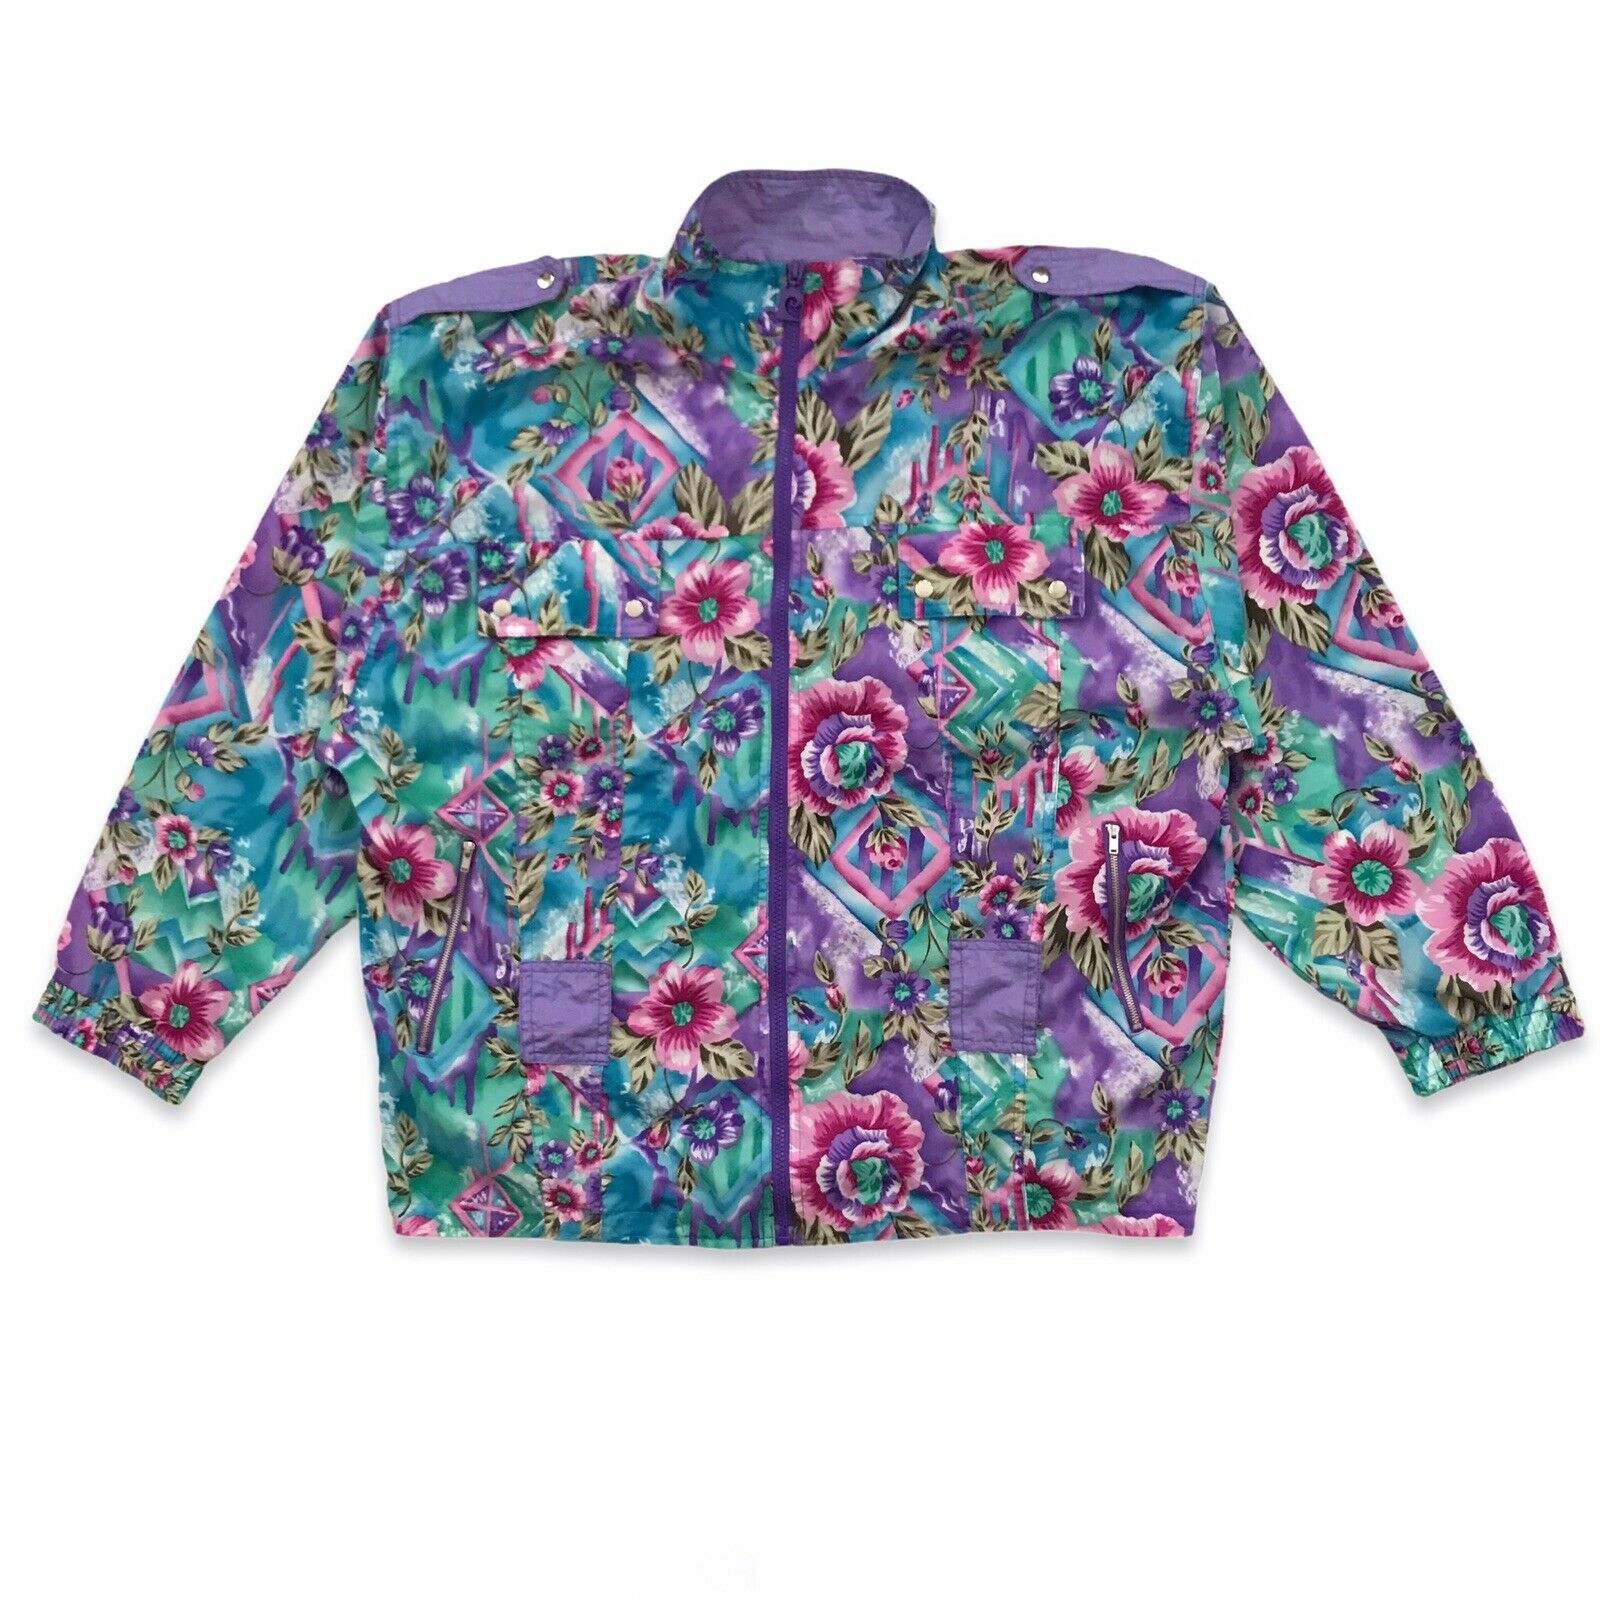 Vintage 80’s Women’s Pierre Cardin Windbreaker Jacket Xl 80’s Flowers Floral